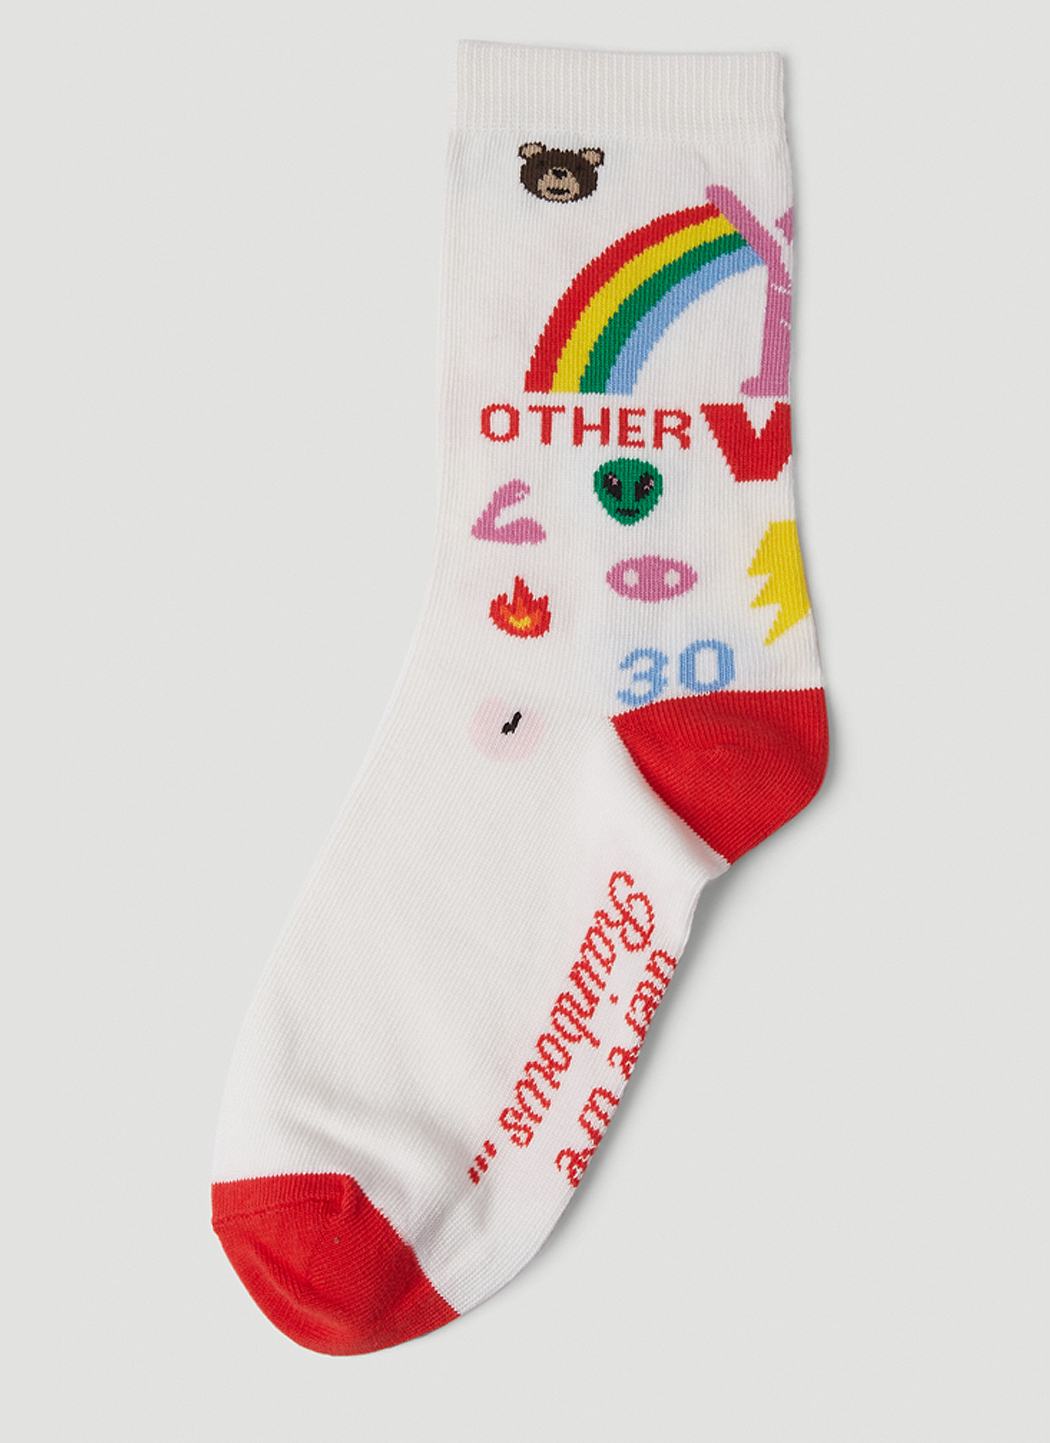 Otherworldly Socks